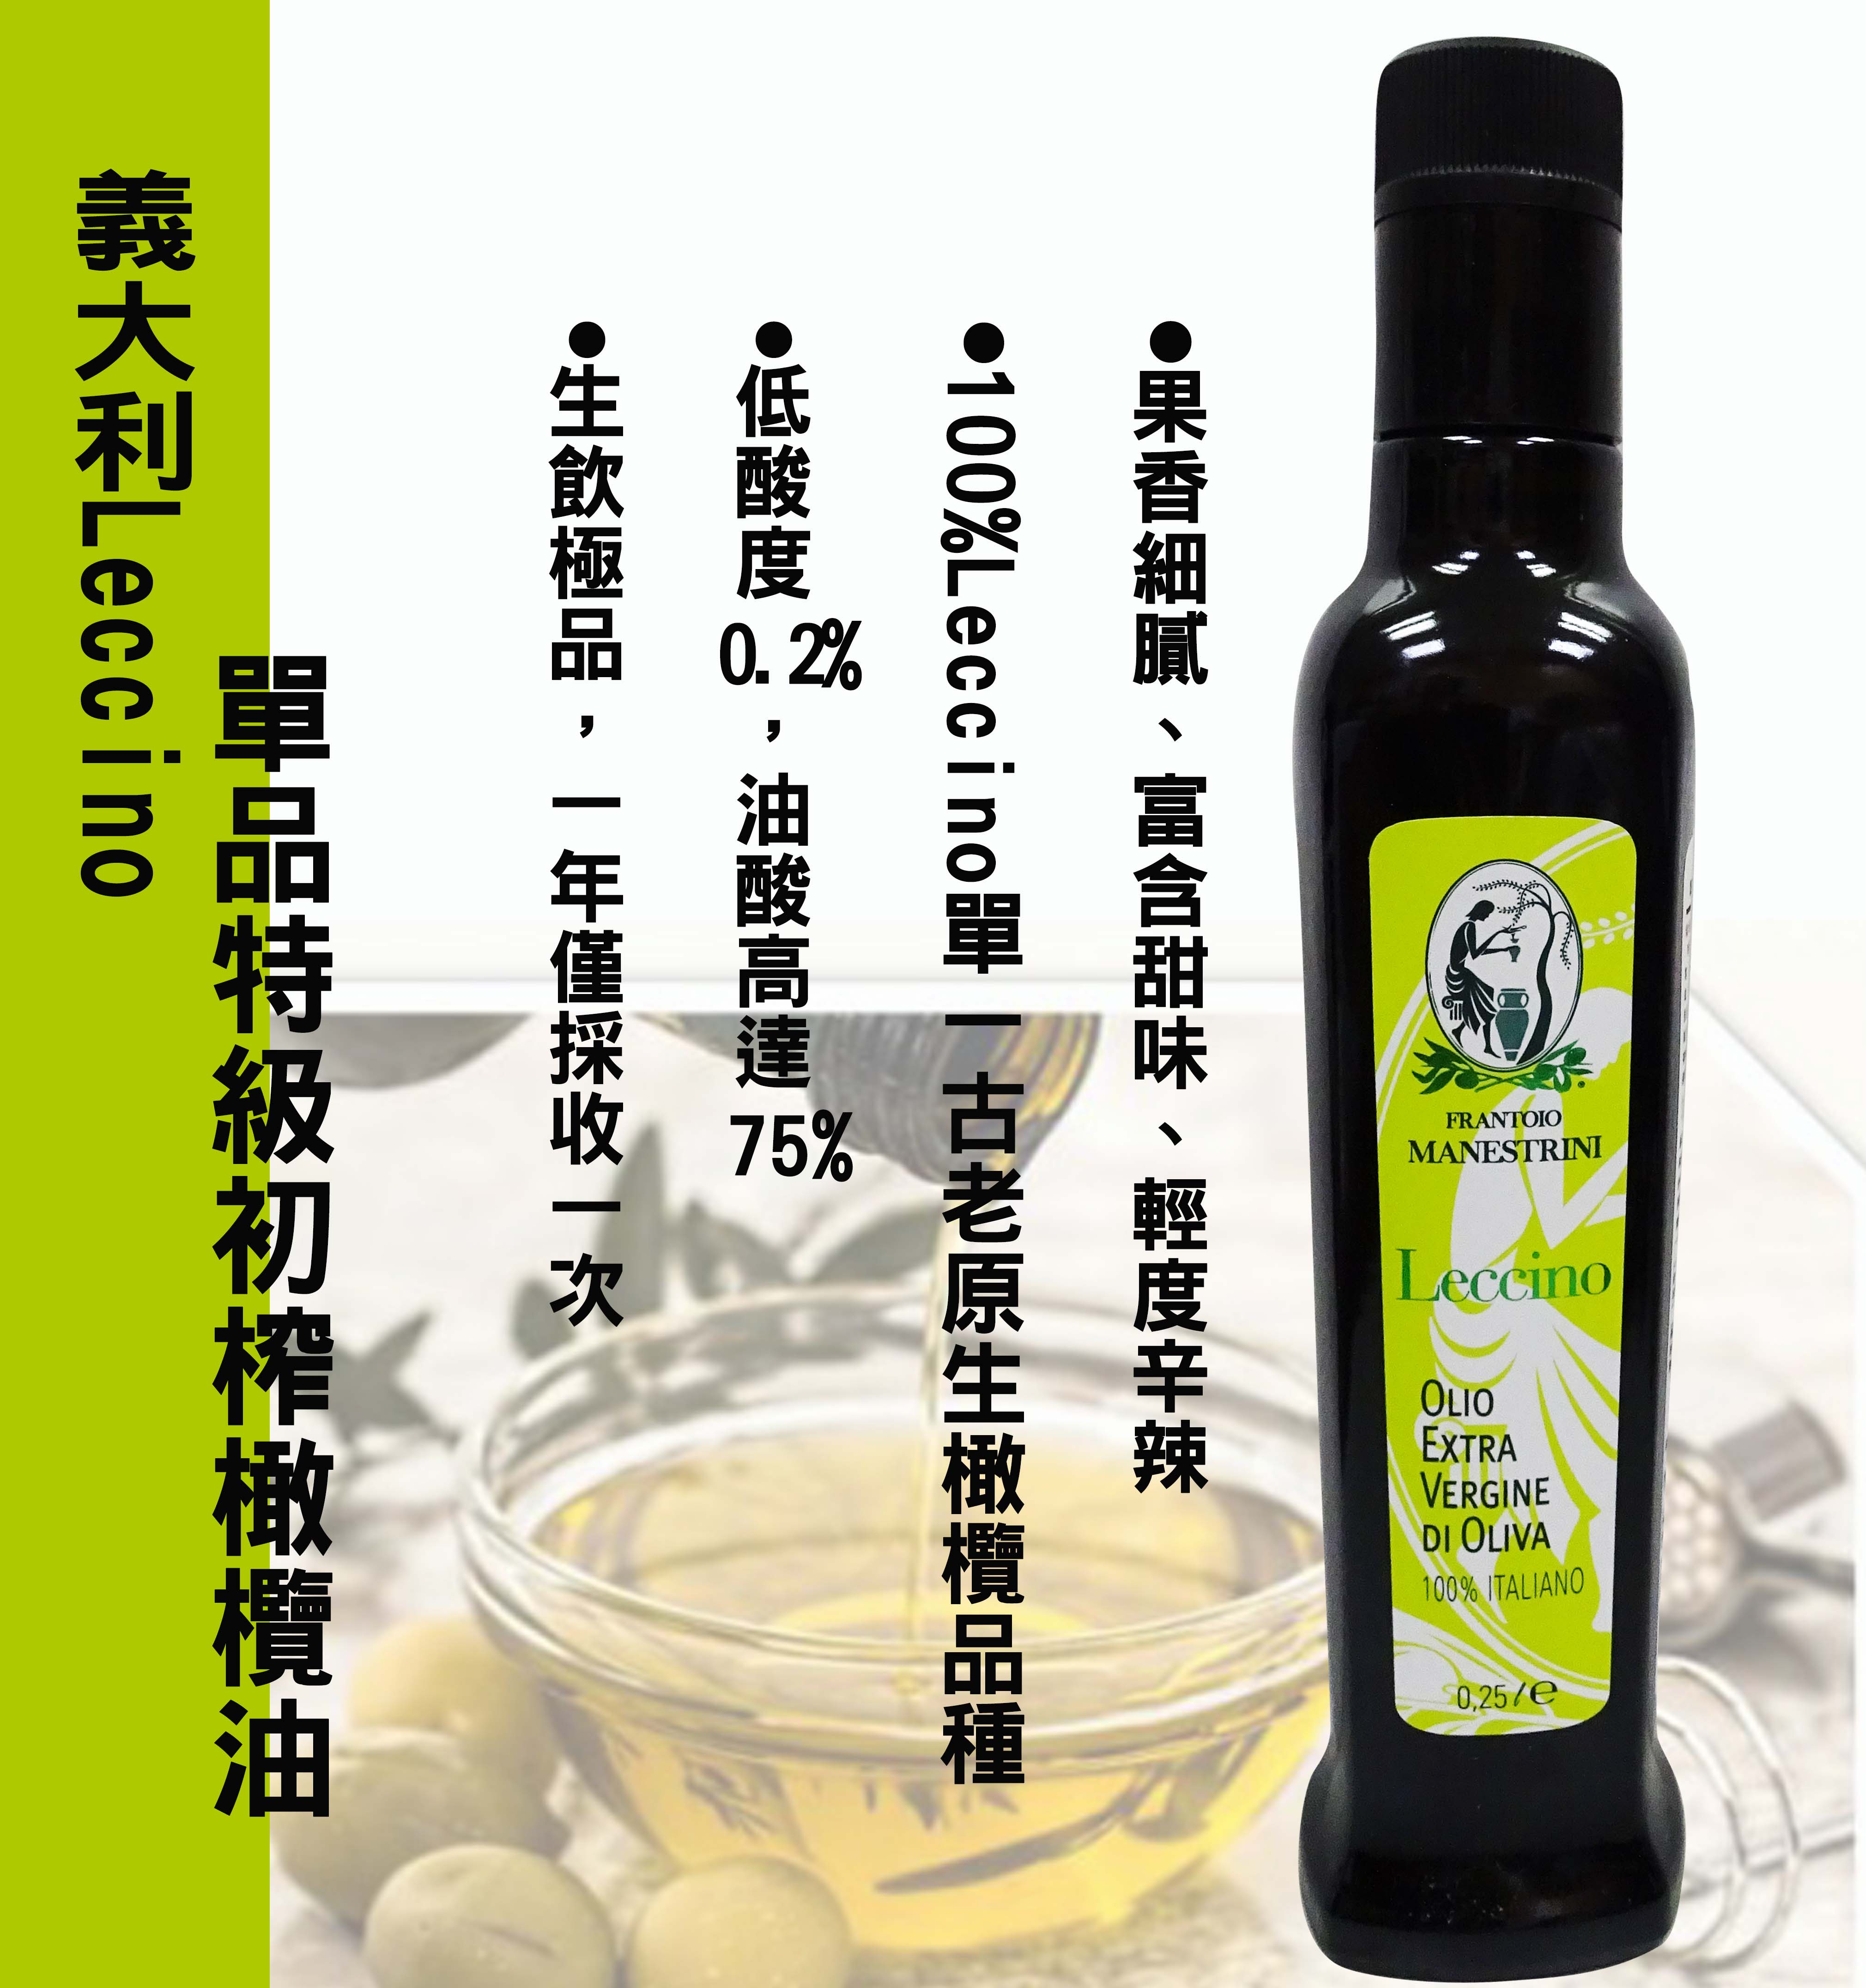 【林博】義大利Leccino單品 - 特級初榨橄欖油(250ml) -效期2026.03.31